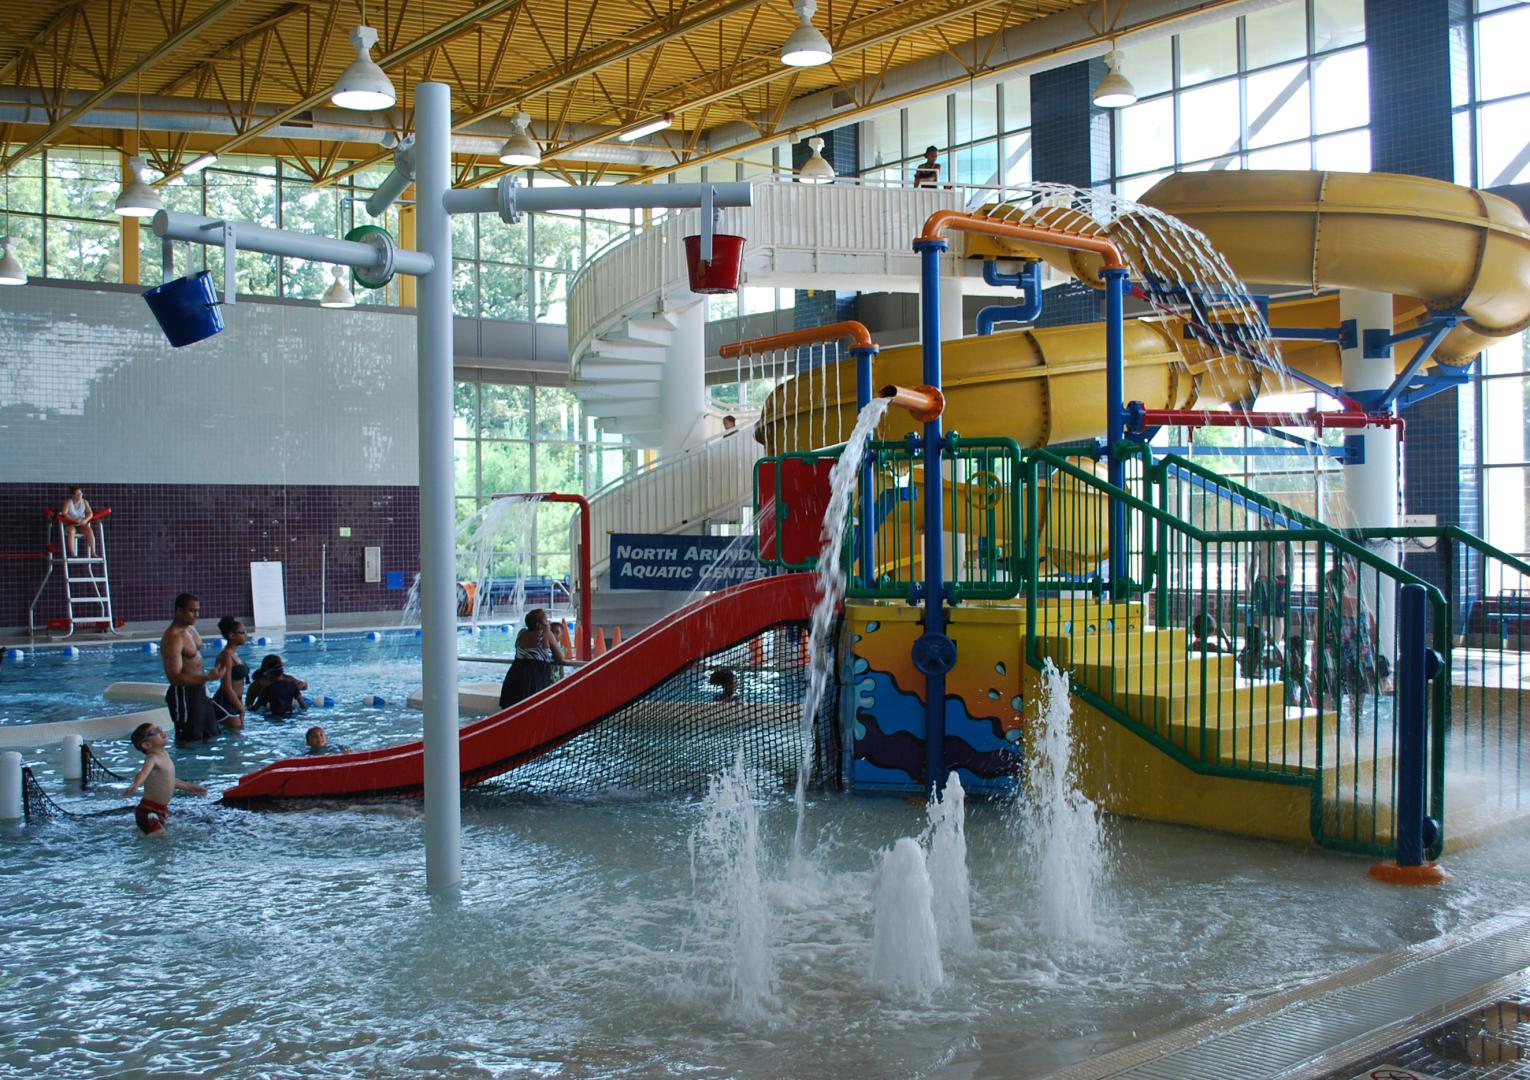 North Arundel Aquatic Center Water Park